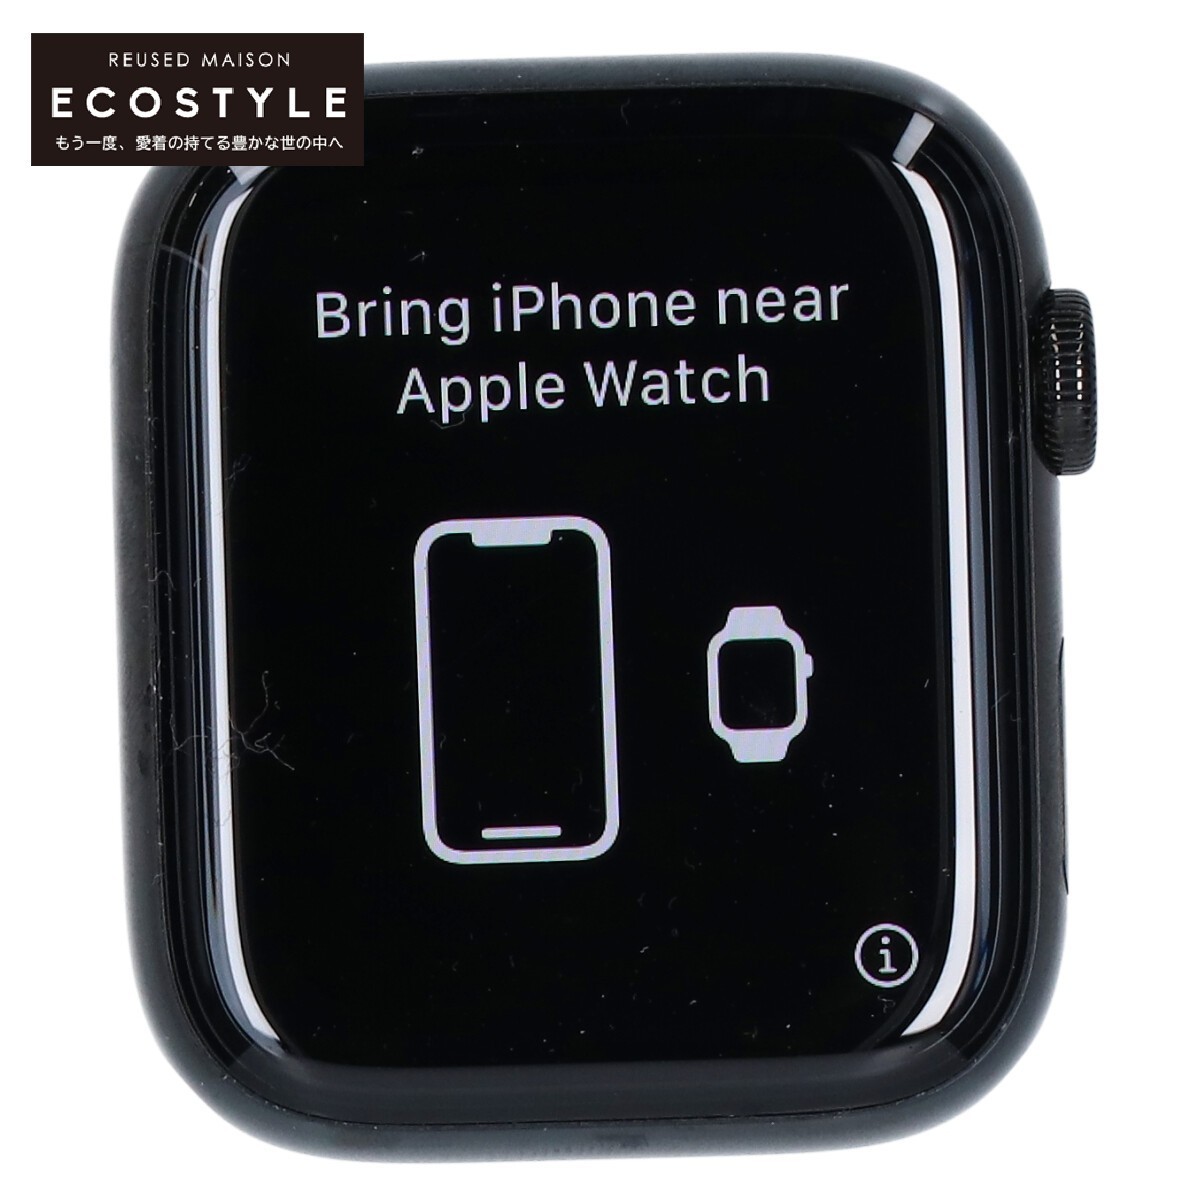 [1 иен ]Apple Watch Apple часы HERMES Hermes MX3K2J/A SERIES 5 GPS+Cellular модель 44mm смарт-часы Space черный 